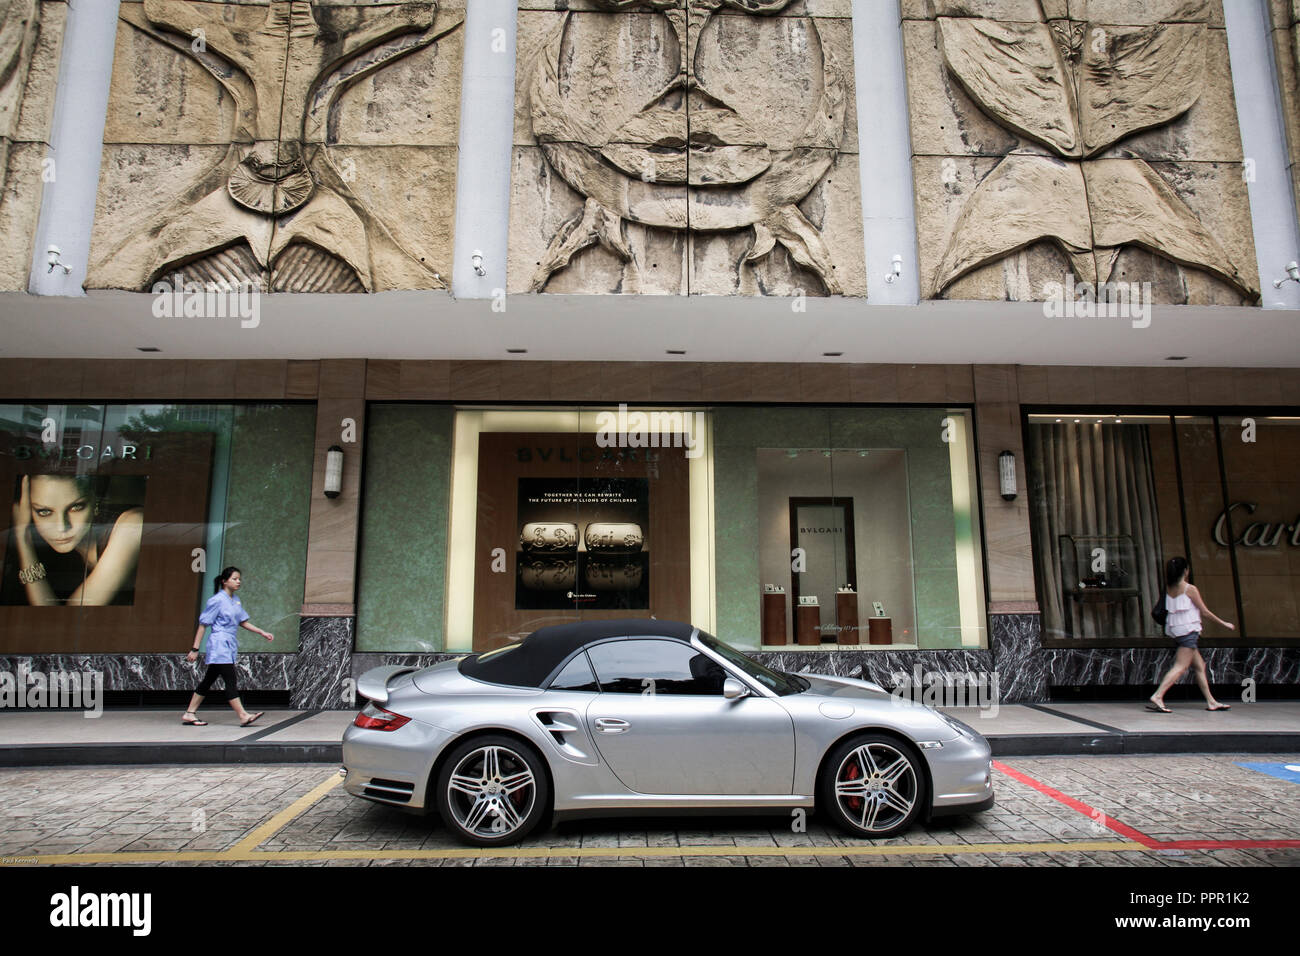 Un coche Porsche aparcado fuera del centro comercial en Orchard Road, Singapur Foto de stock